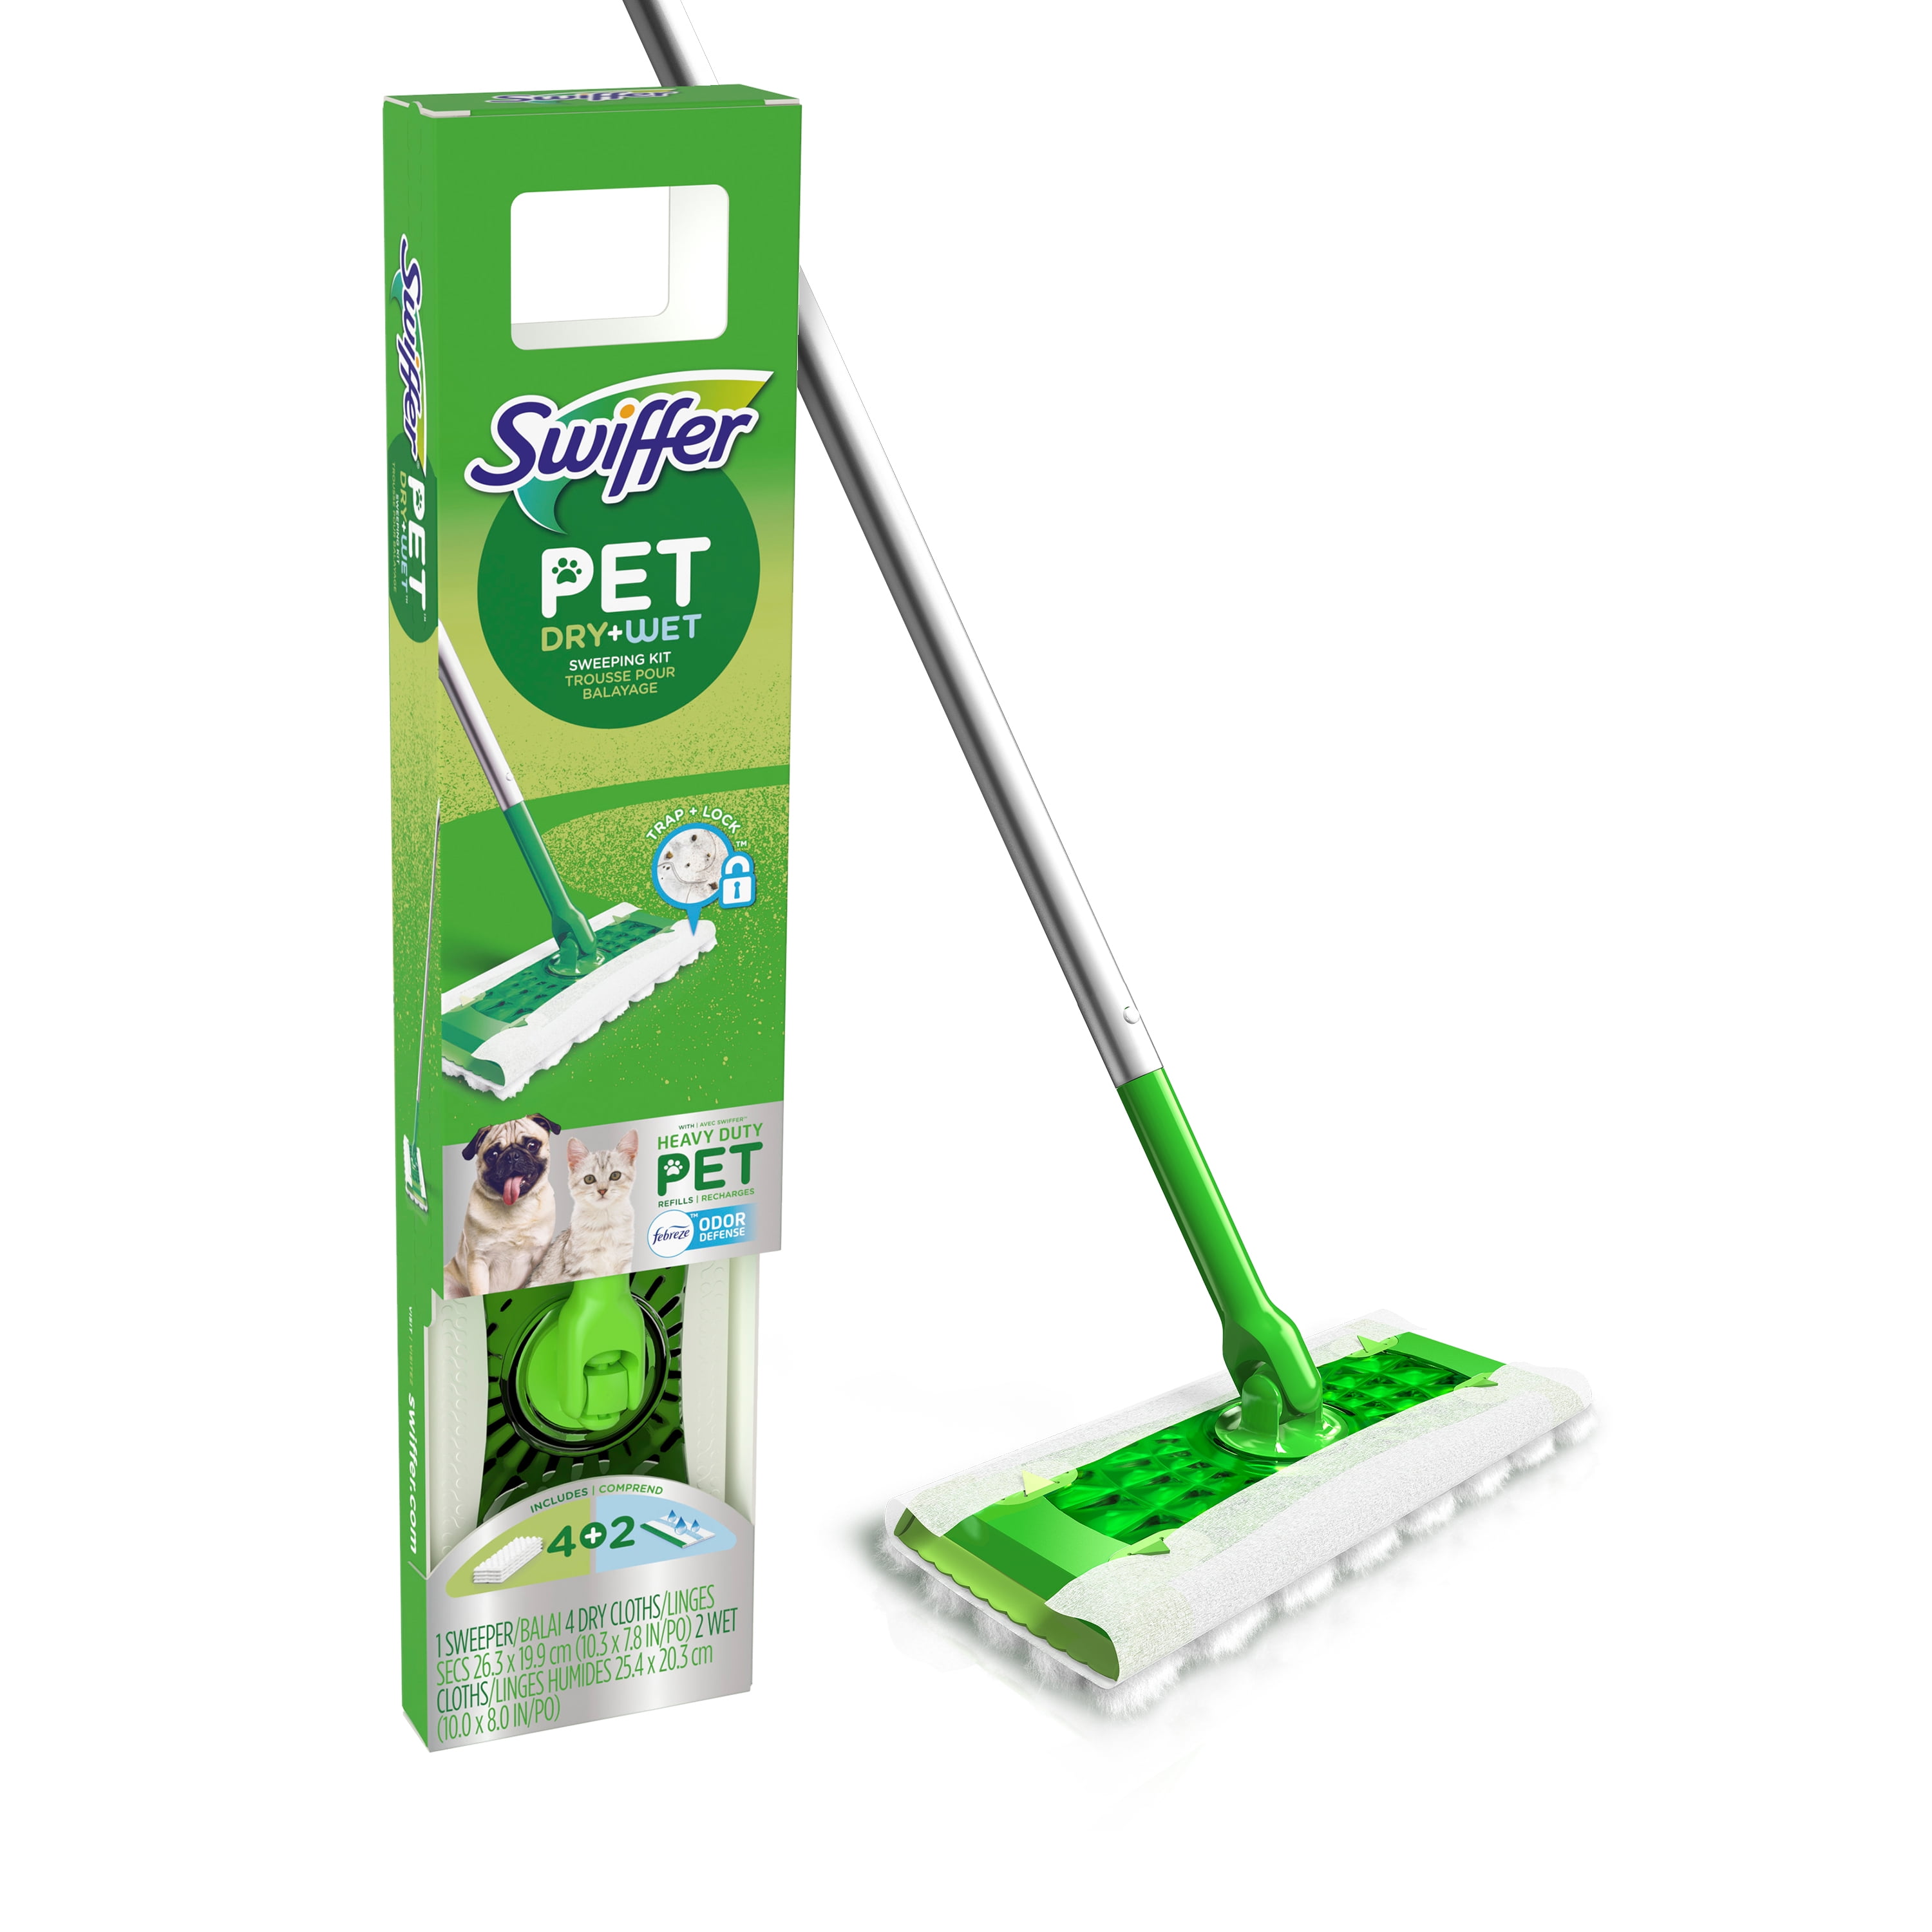 Swiffer Sweeper Pet Heavy Duty Dry + Wet All Purpose Floor 